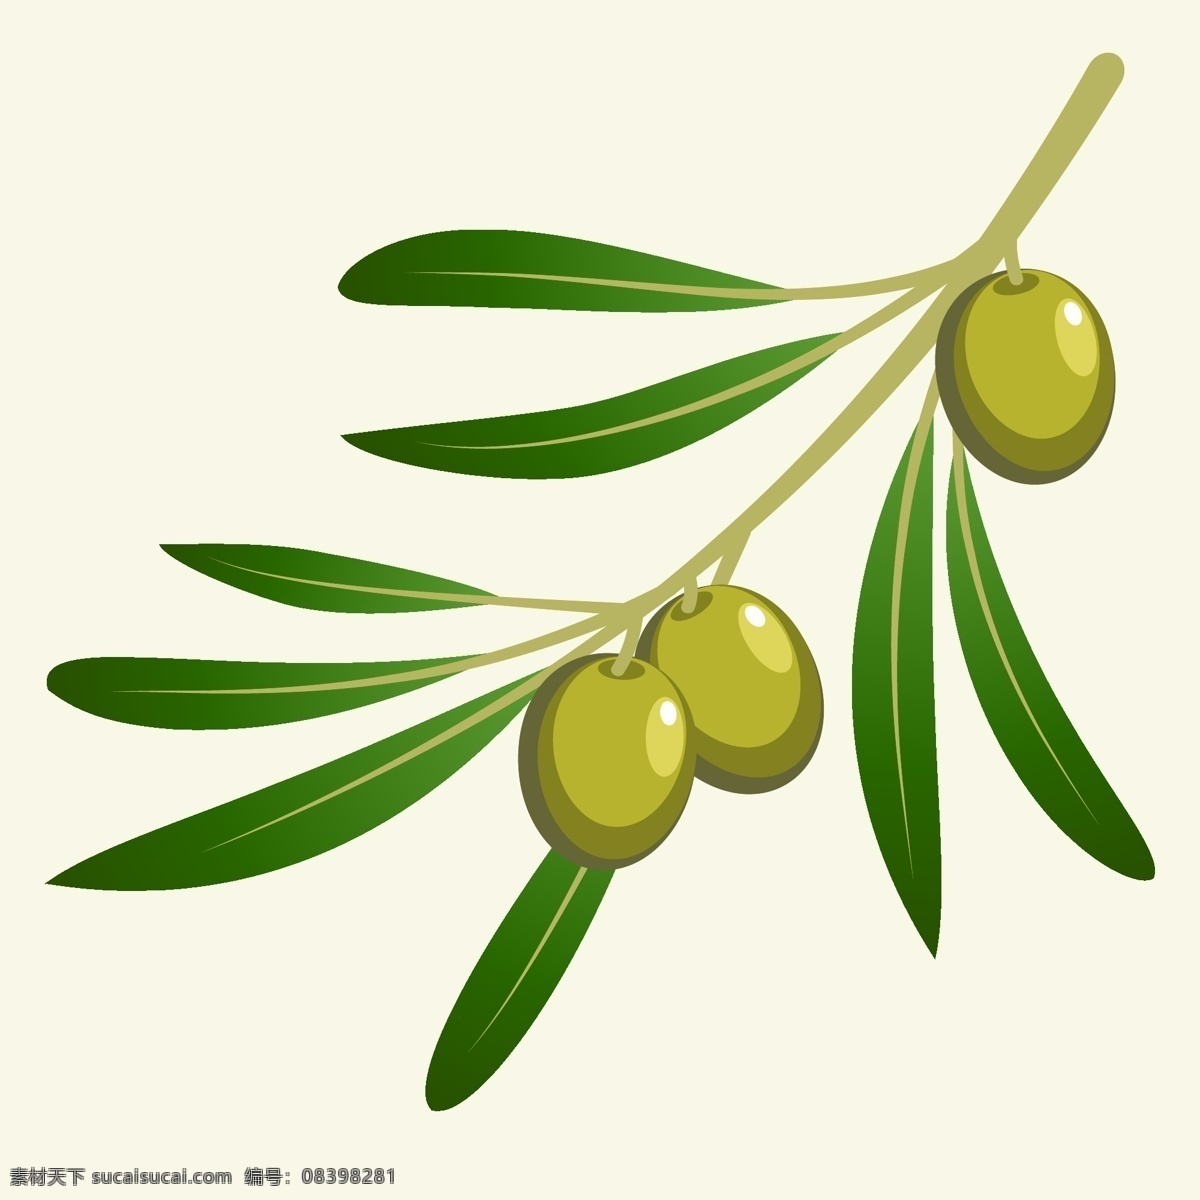 绿色橄榄插图 绿色 橄榄 叶子 插图 黄色 生活百科 矢量素材 白色